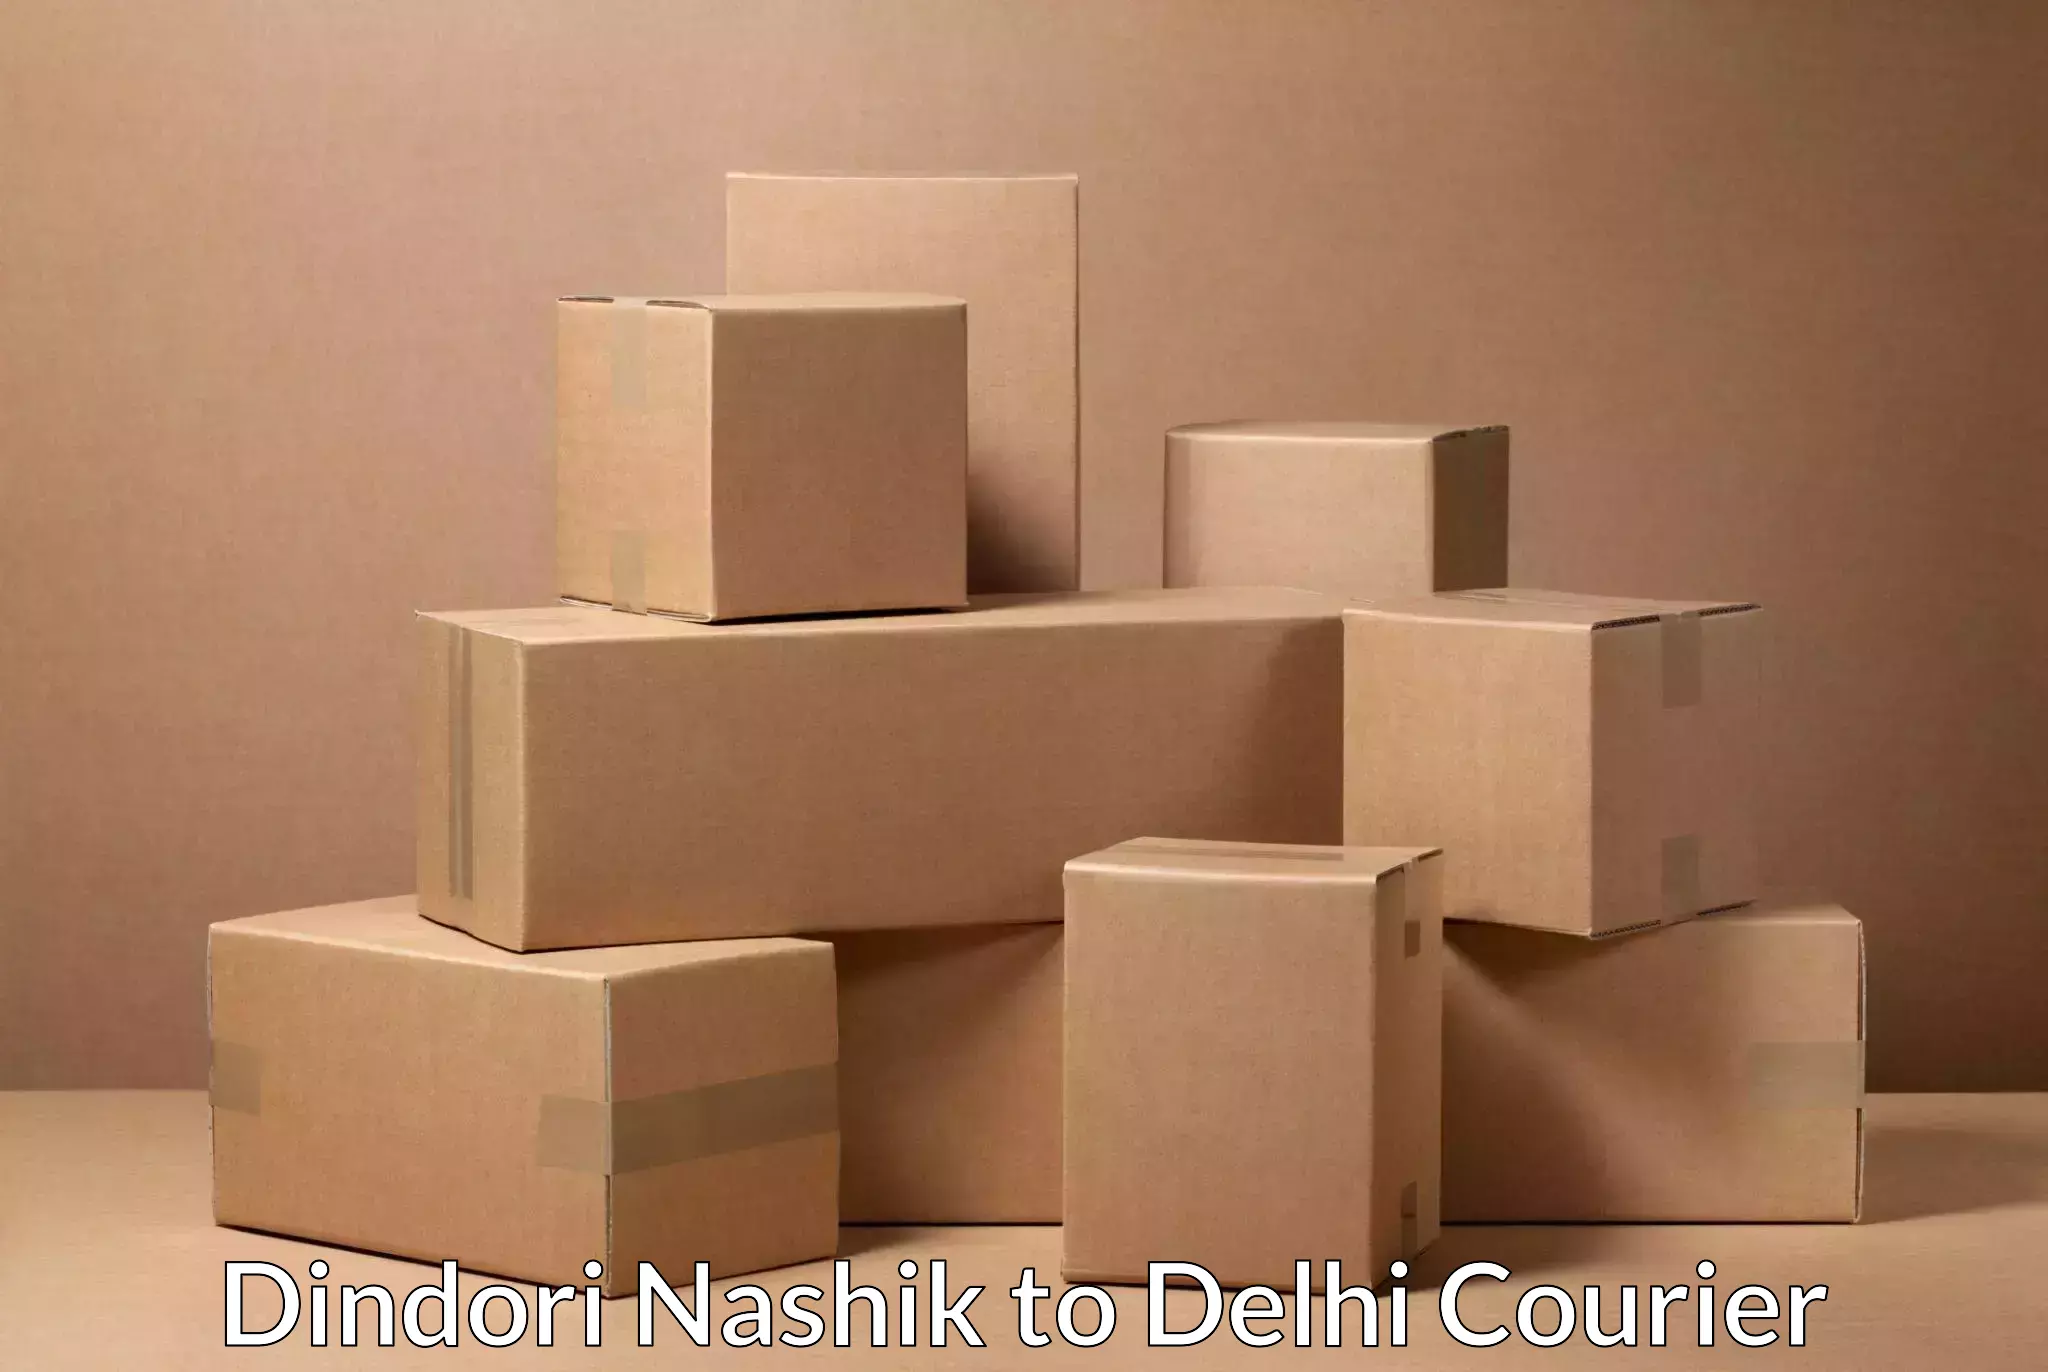 Next day courier Dindori Nashik to Lodhi Road